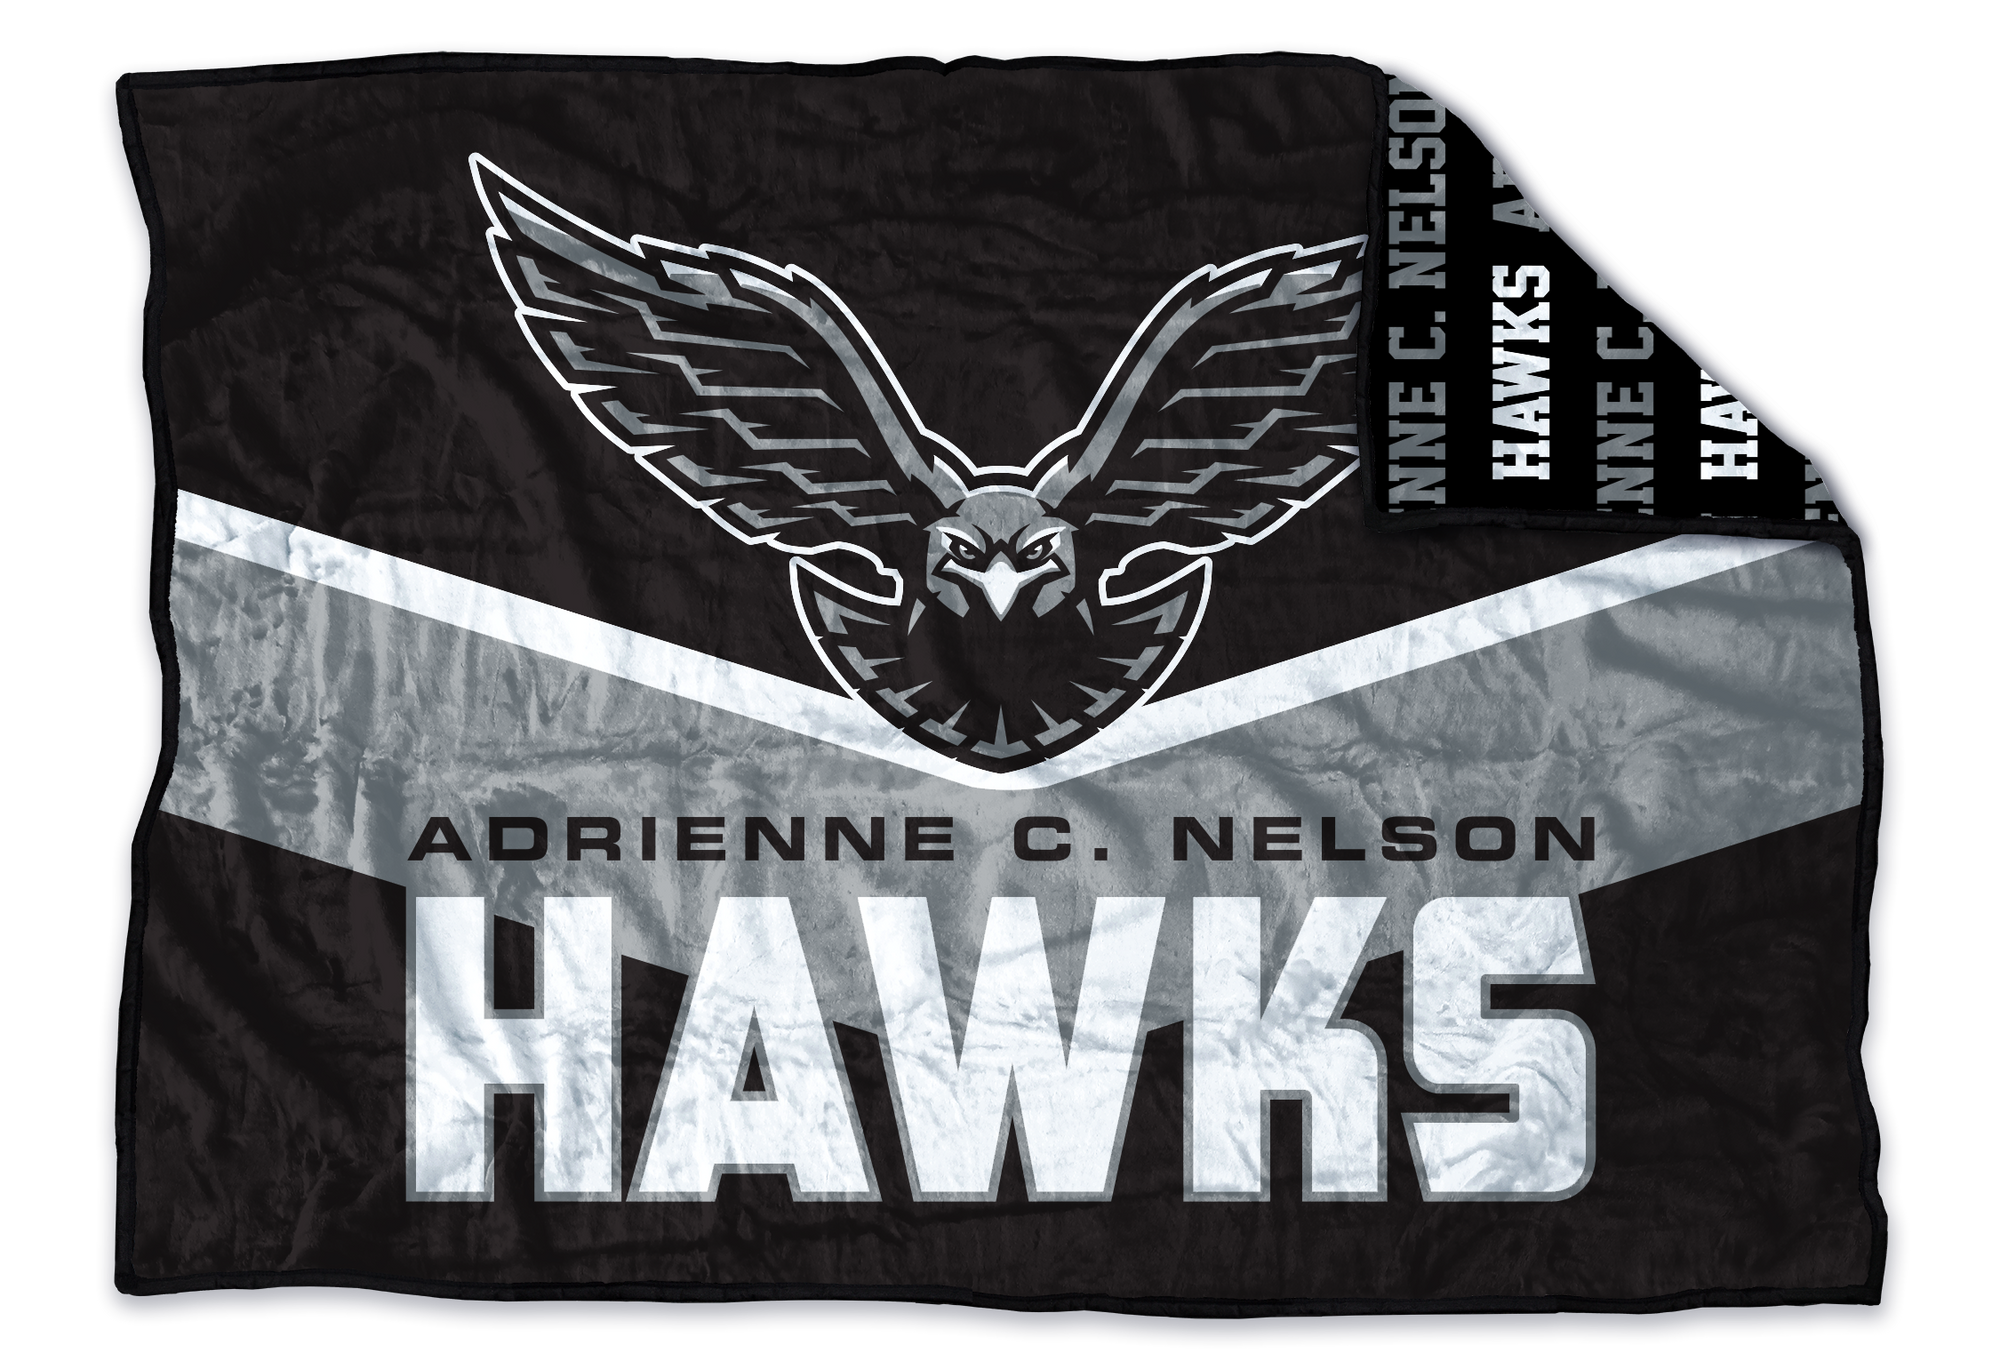 Adrienne C. Nelson Hawks